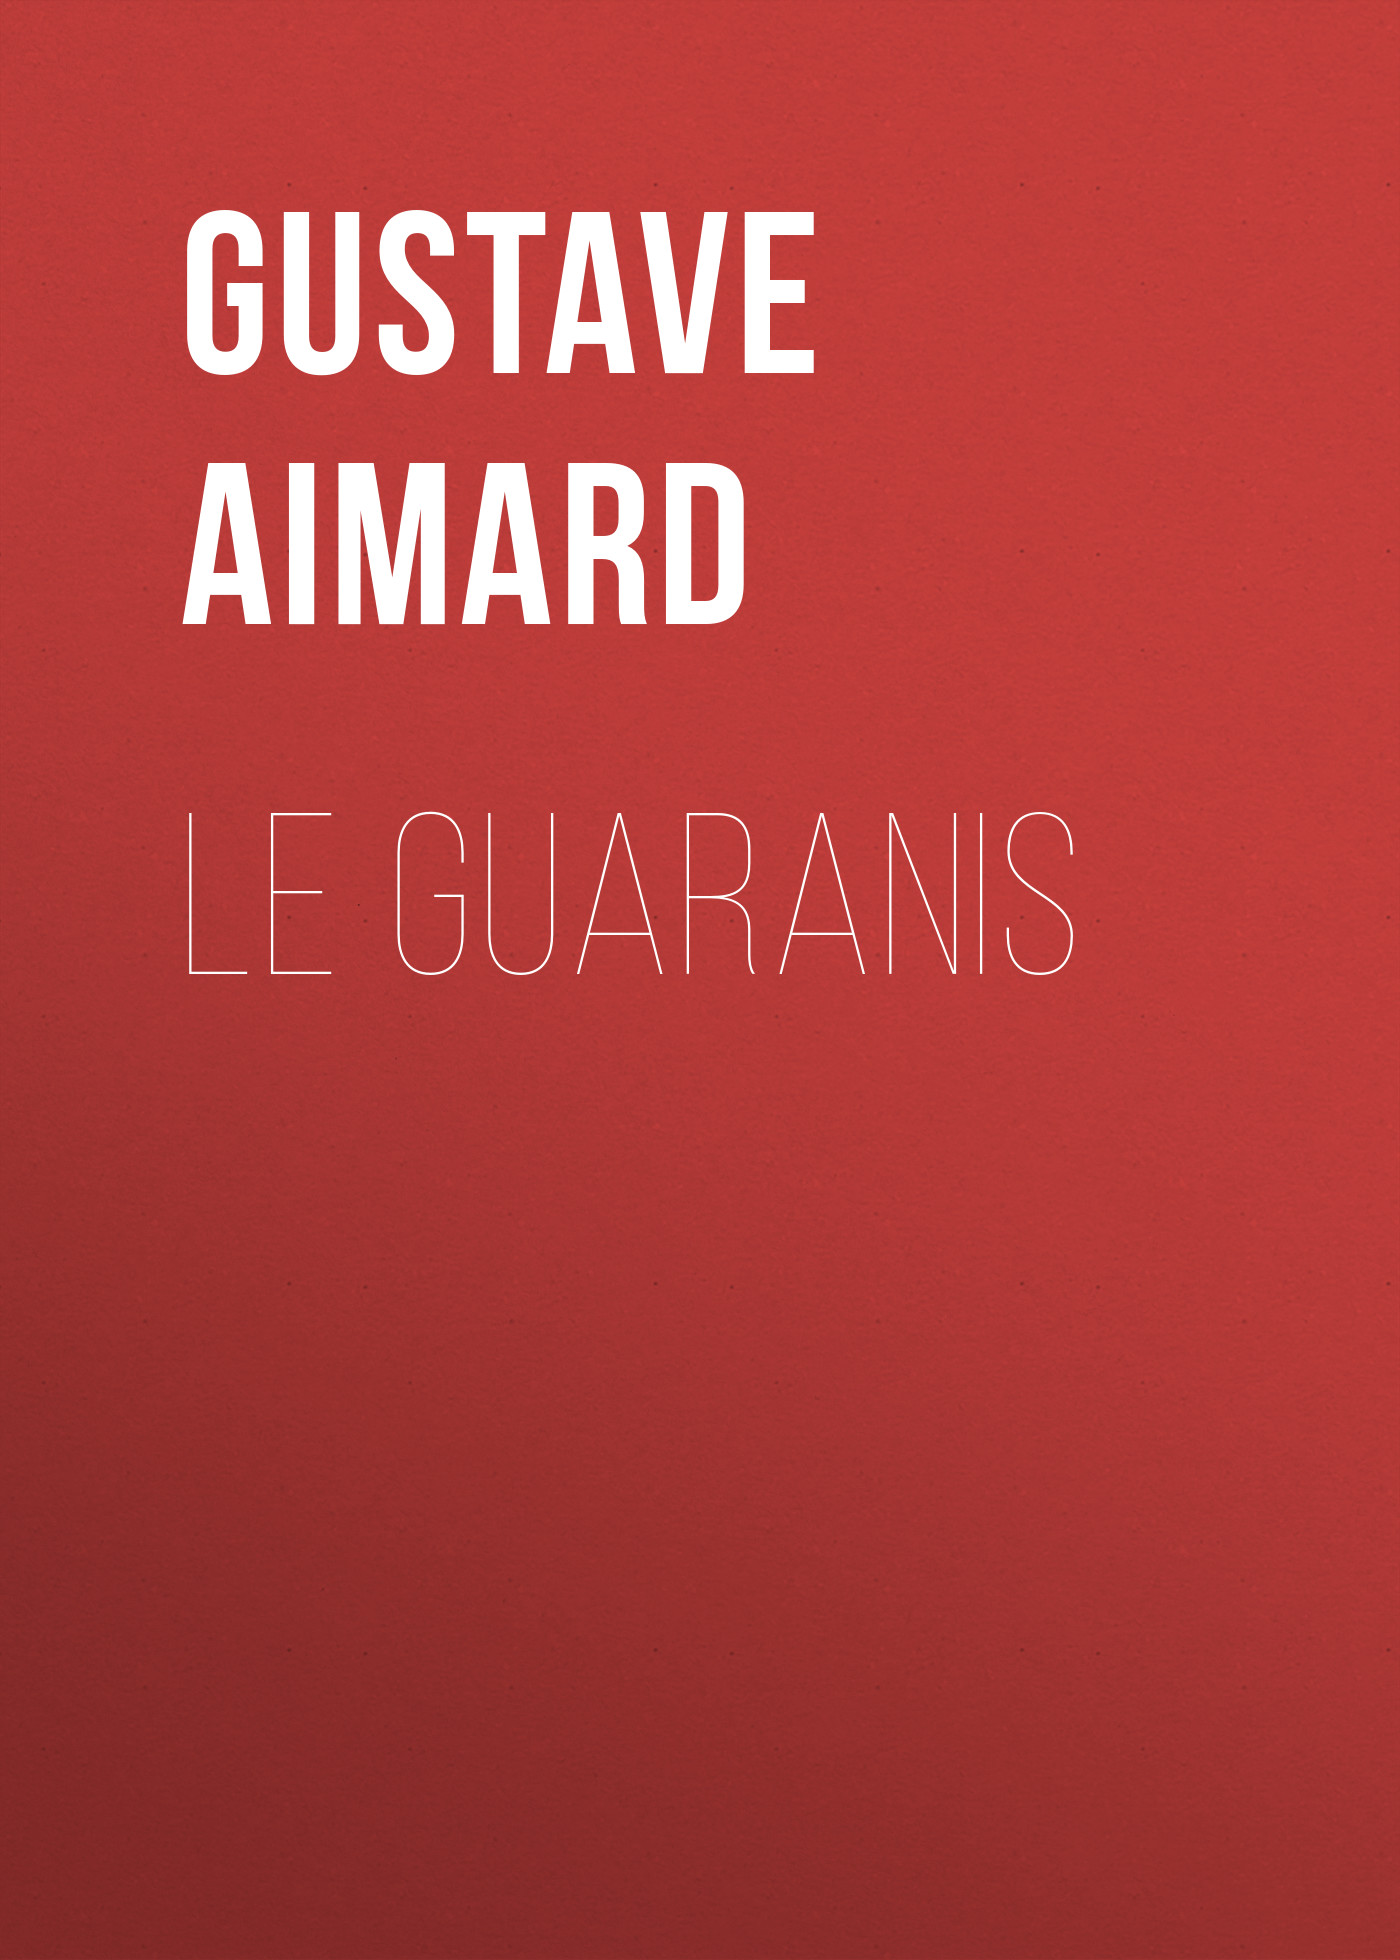 Книга Le Guaranis из серии , созданная Gustave Aimard, может относится к жанру Зарубежная старинная литература, Зарубежная классика. Стоимость электронной книги Le Guaranis с идентификатором 24175276 составляет 5.99 руб.